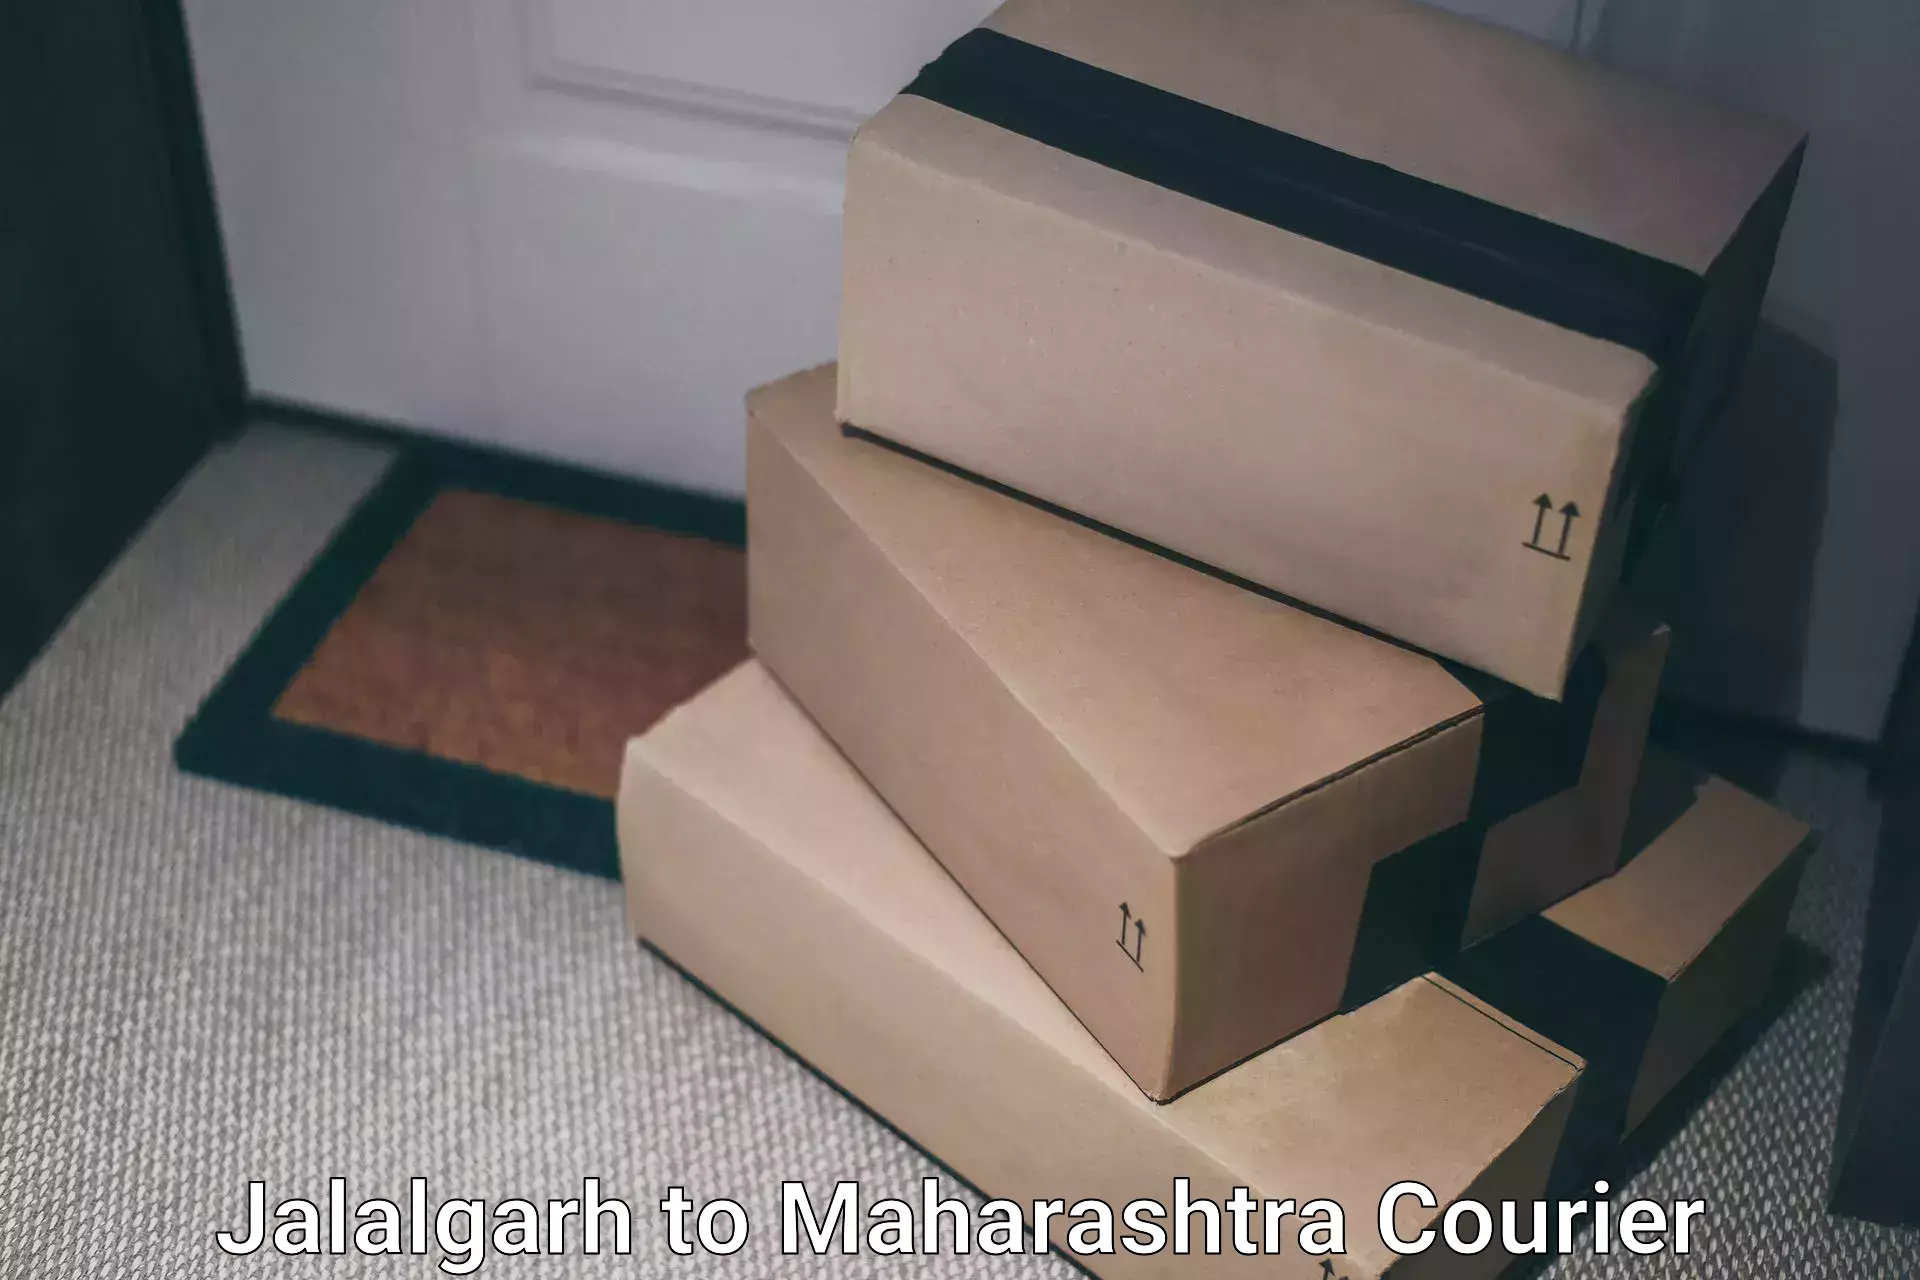 On-demand courier Jalalgarh to Degloor